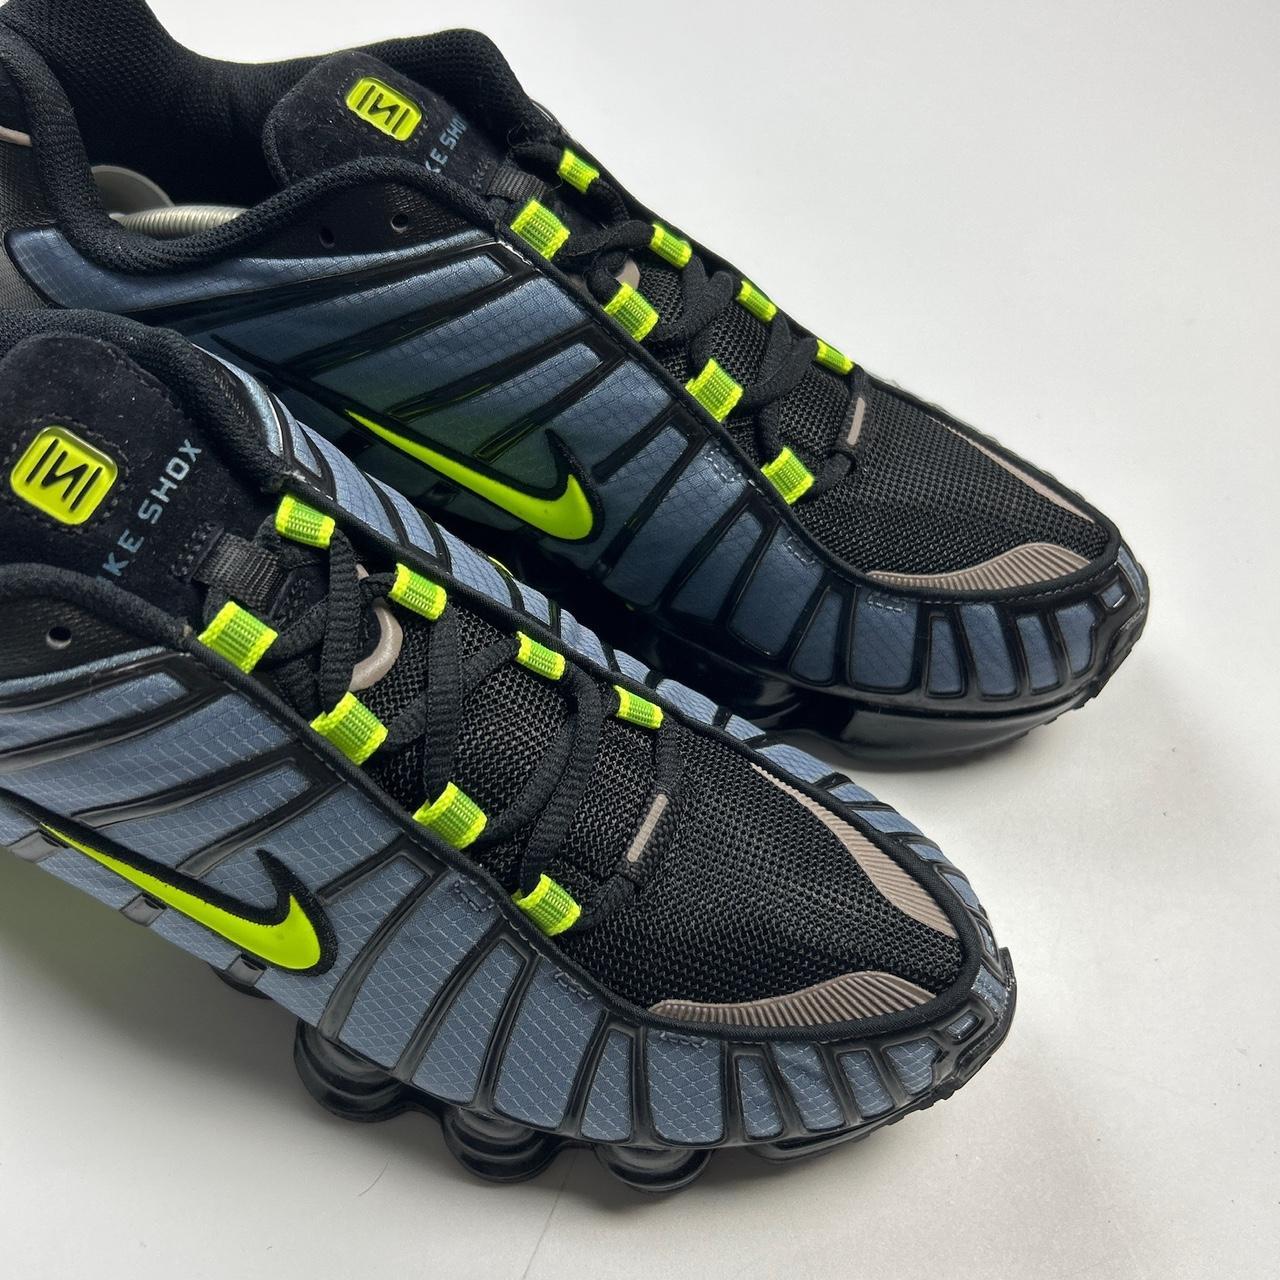 Nike Shox (UK 10)